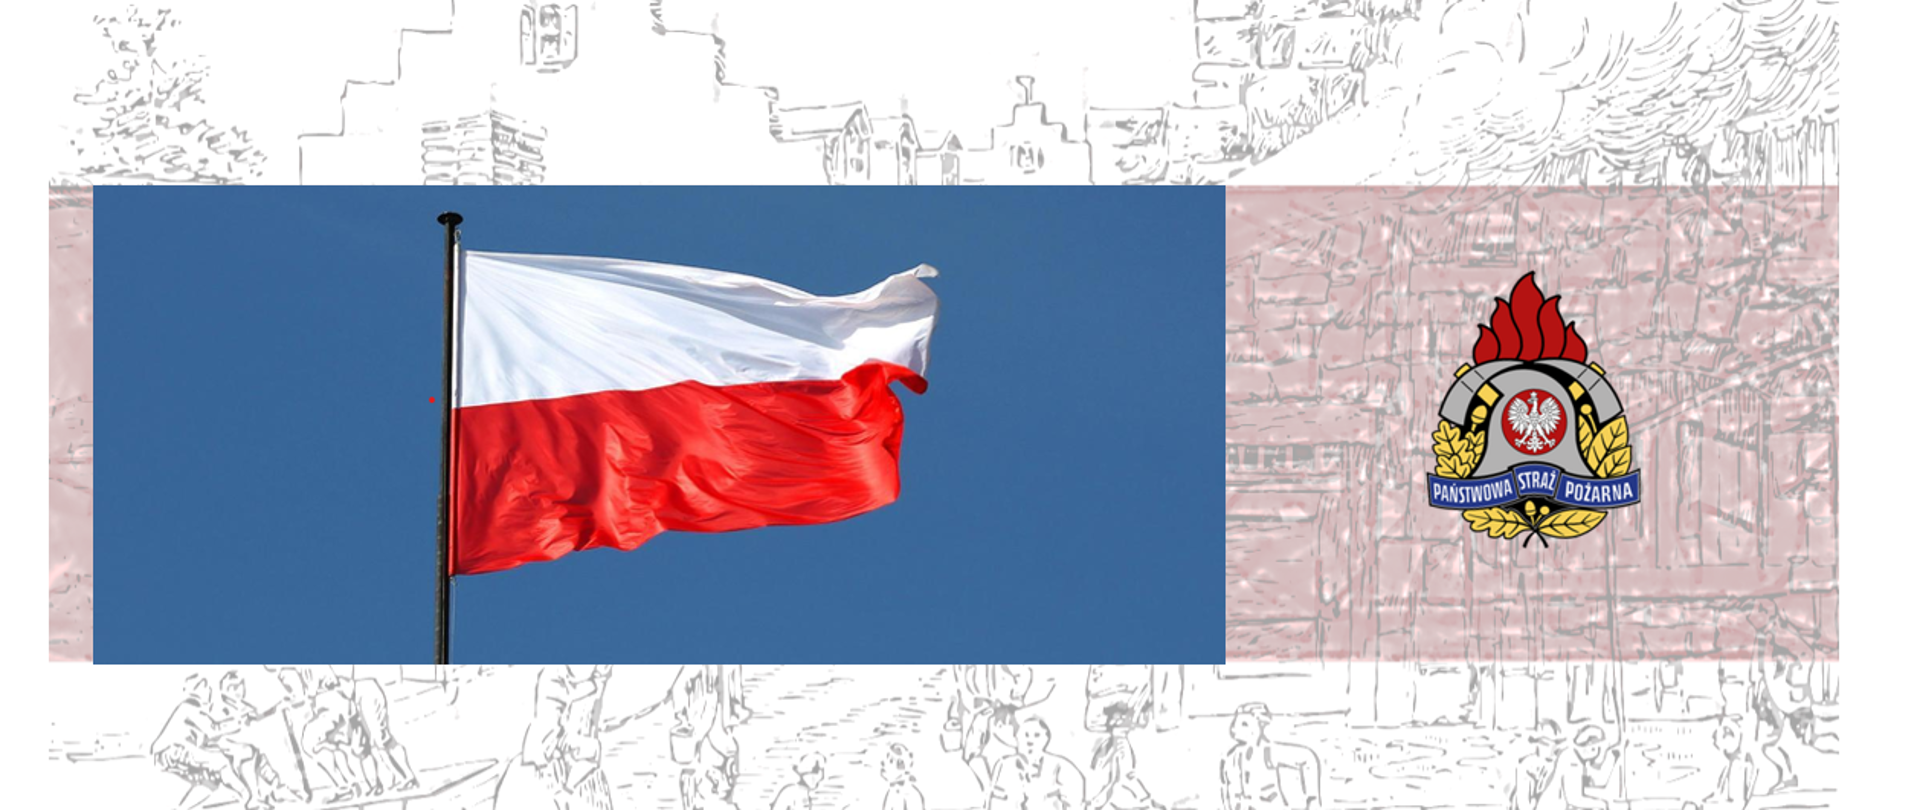 Po lewej flaga Polski a po prawej stronie logo PSP.